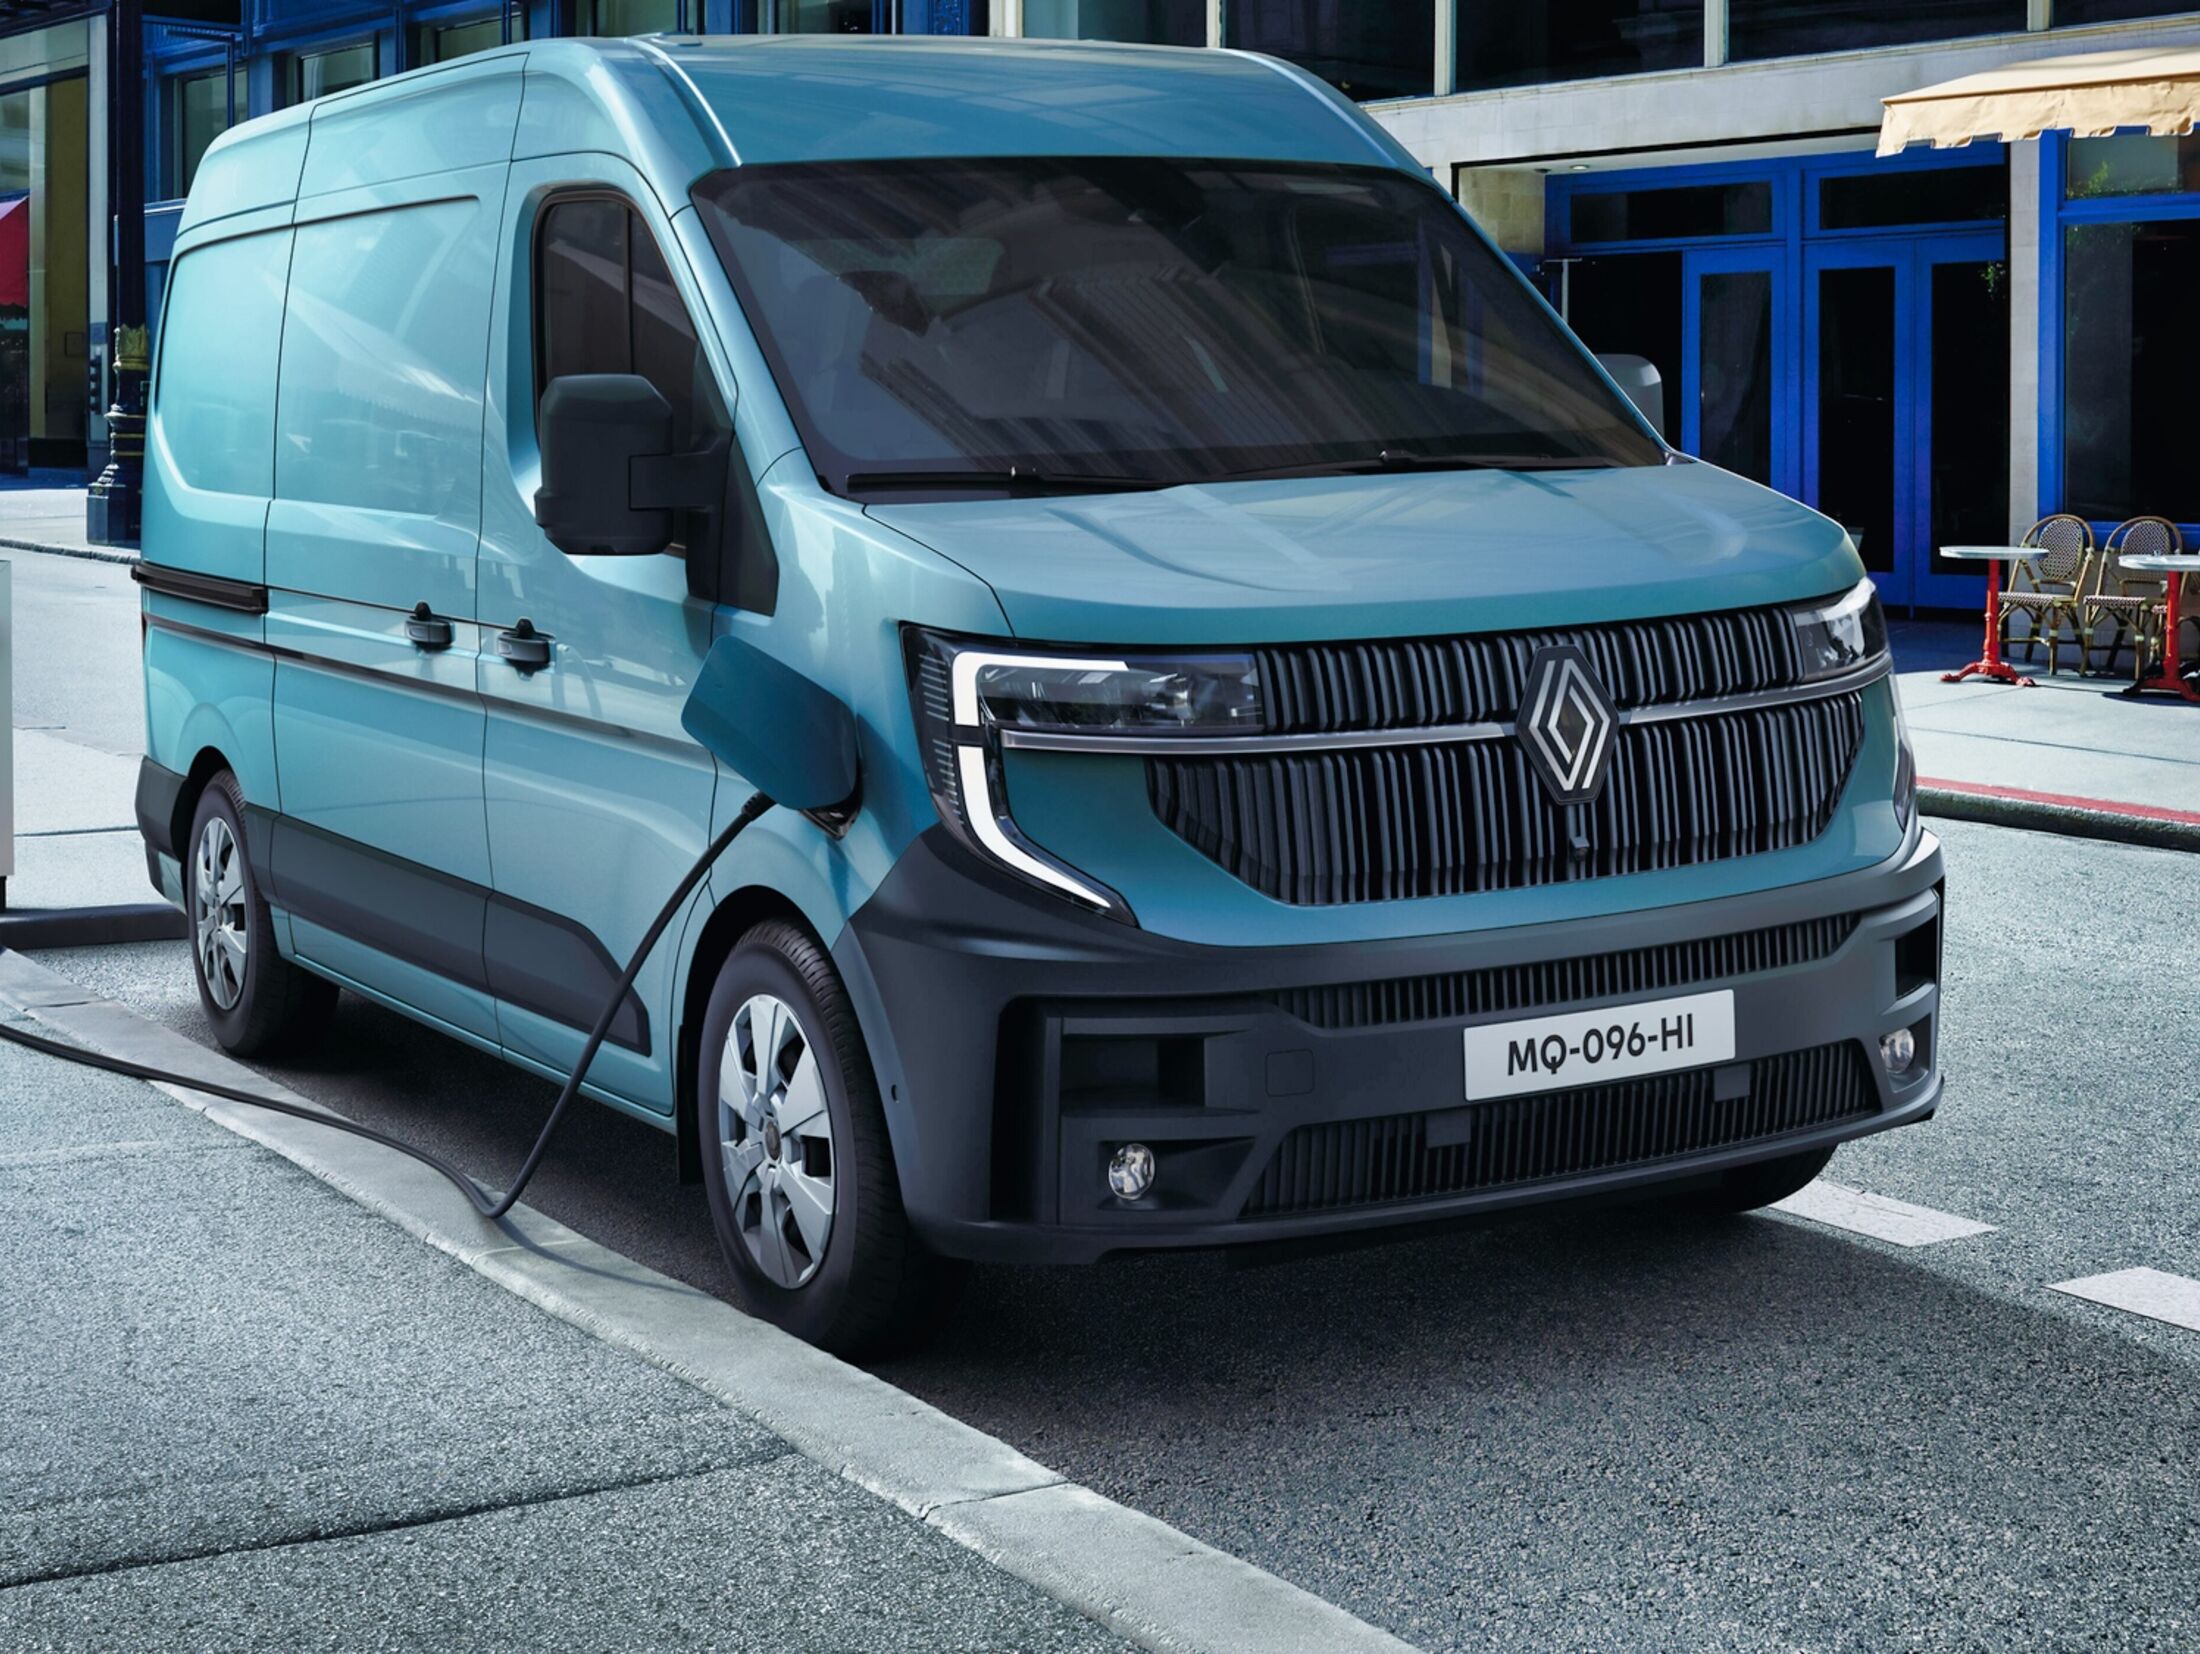 Renault Trafic: Jetzt auch Transporter mit Facelift